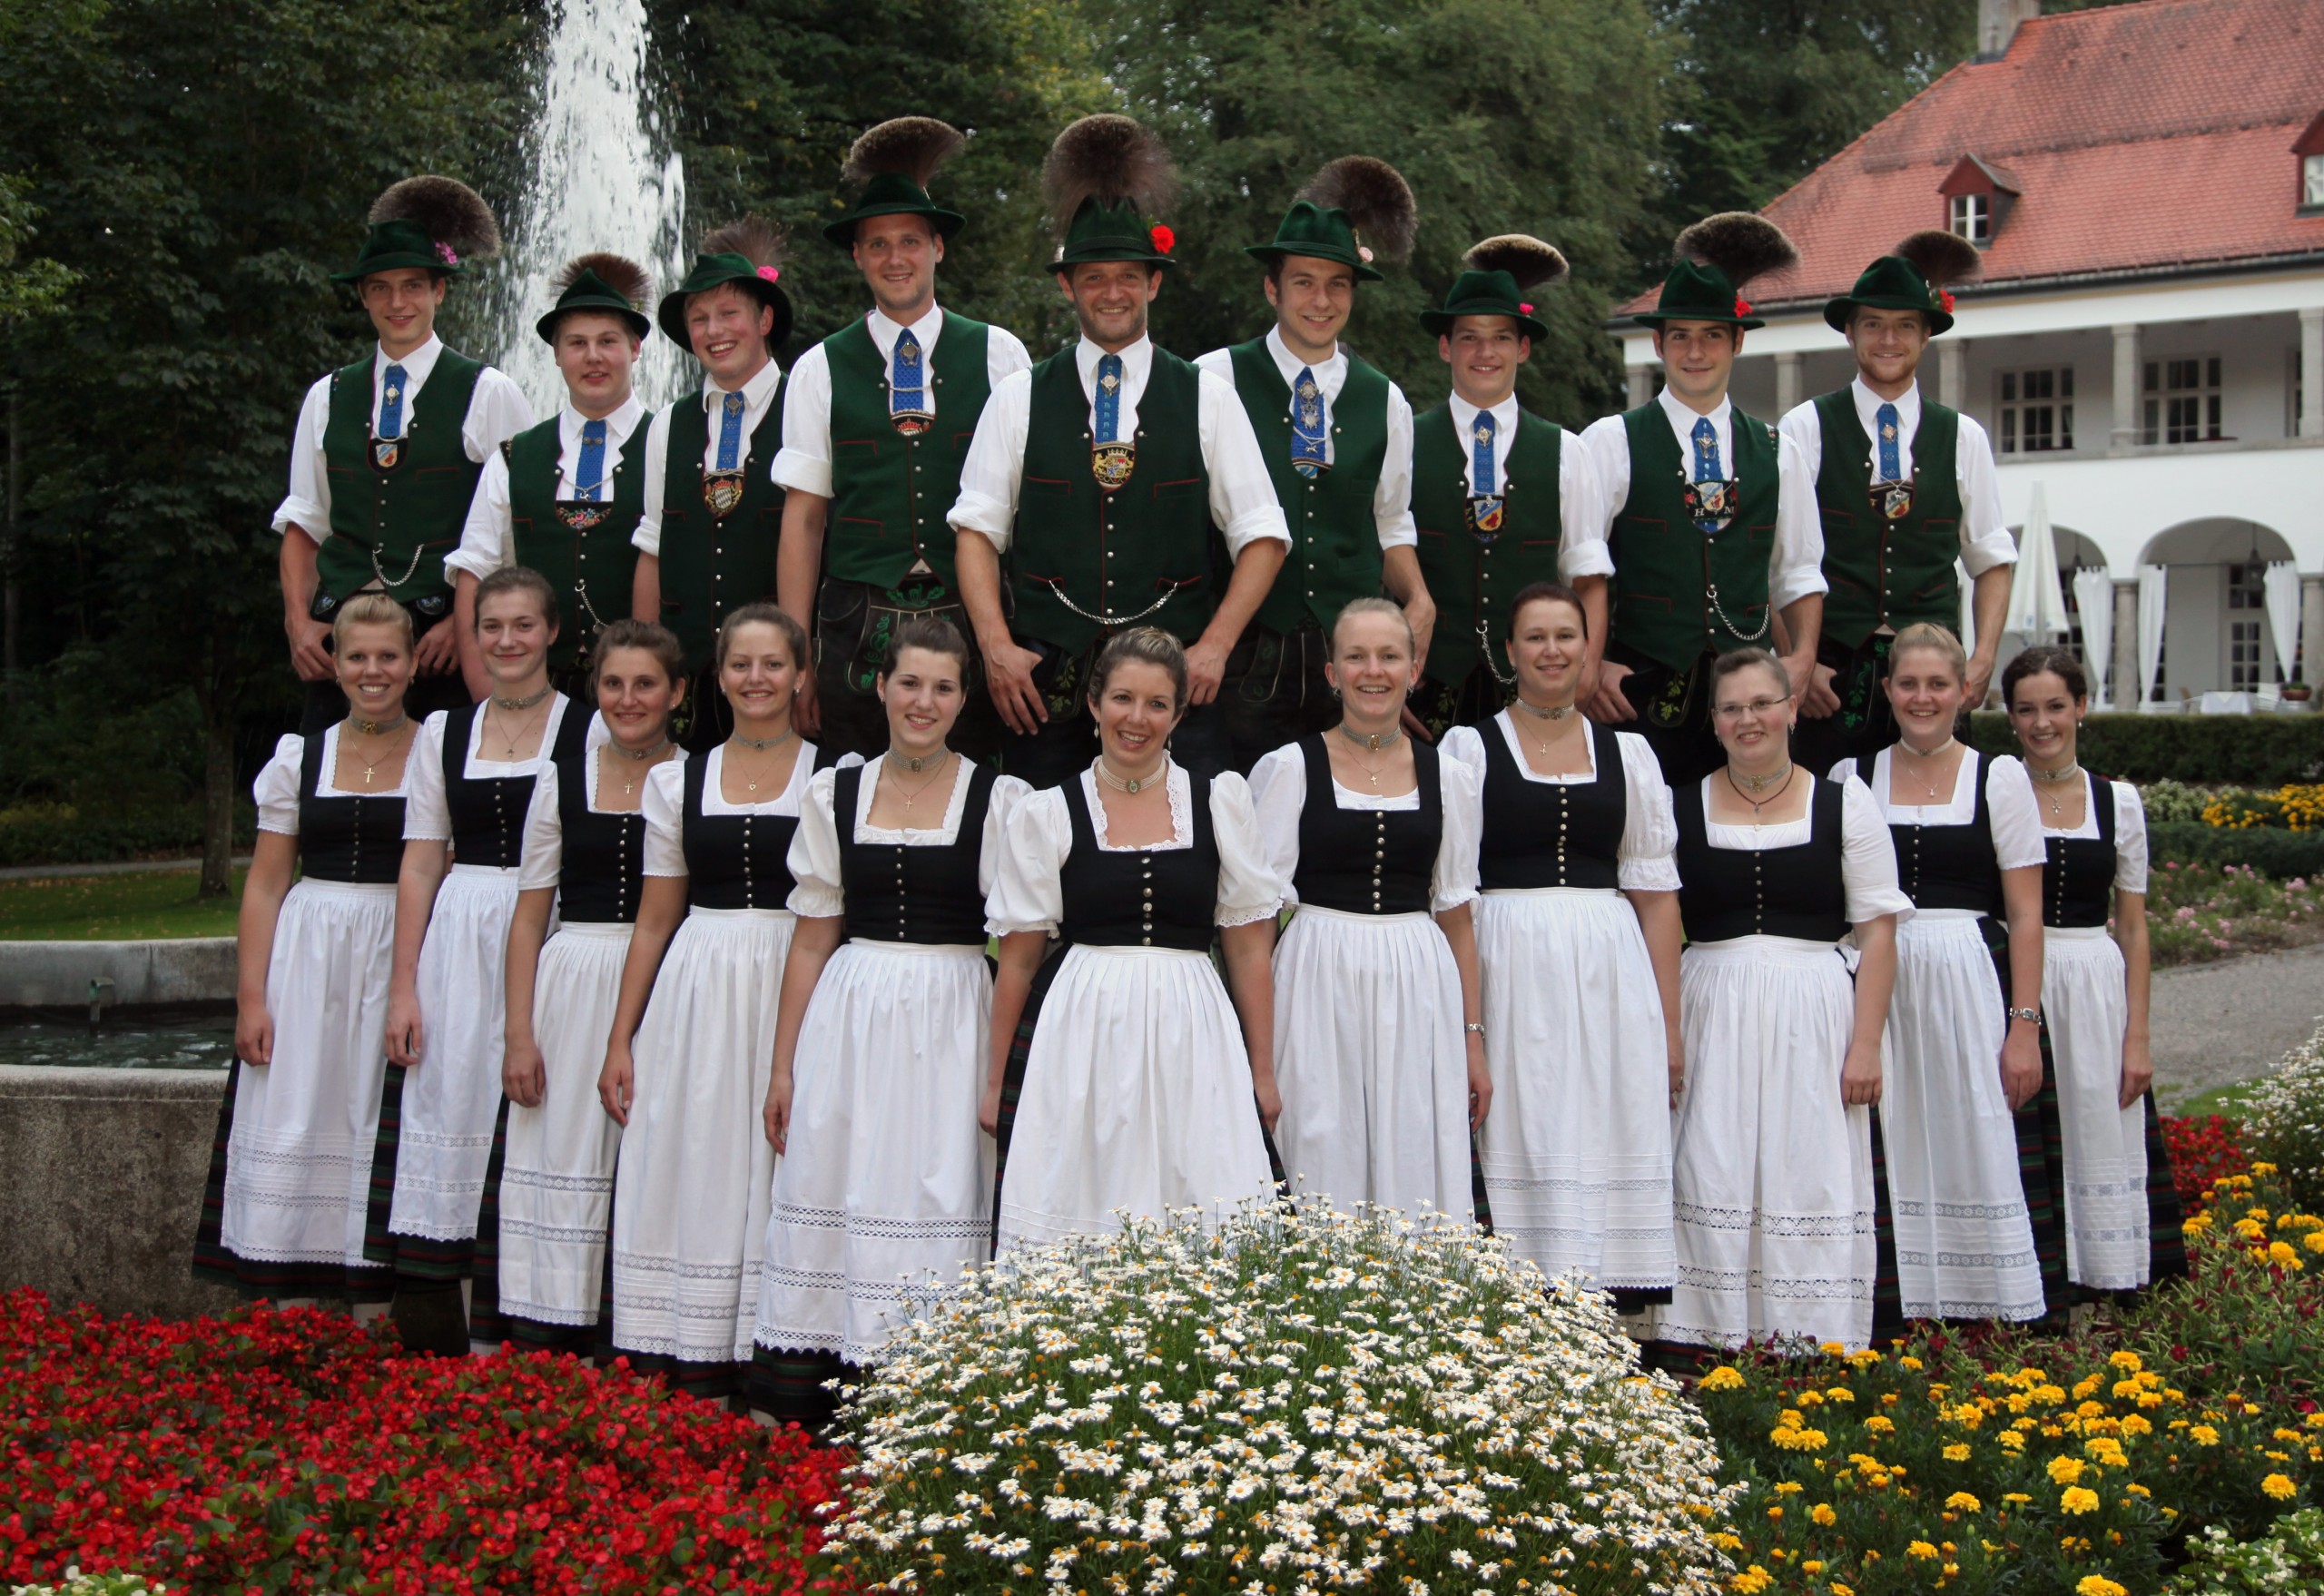 Tradition & Brauchtum in Bad Tölz